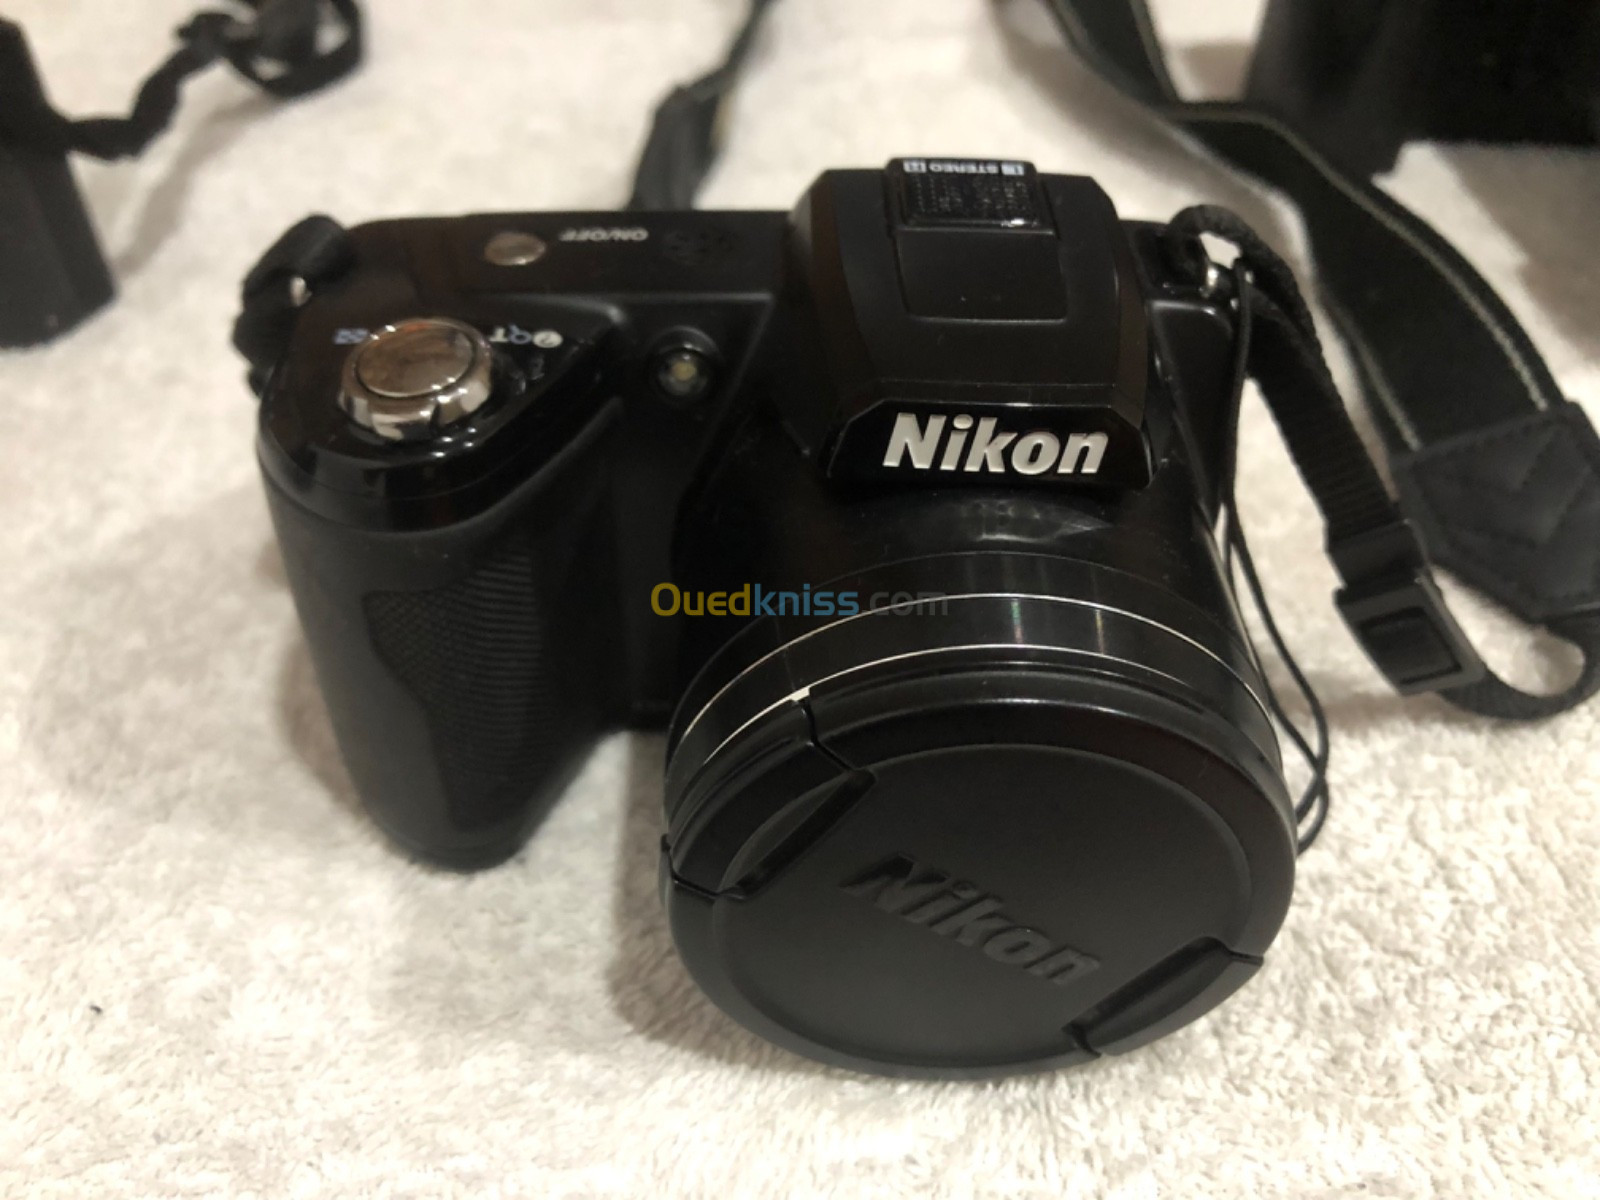 Nikon d70/Nikon Coolpix L110/ Nikon j1/ Ricoh gx 100